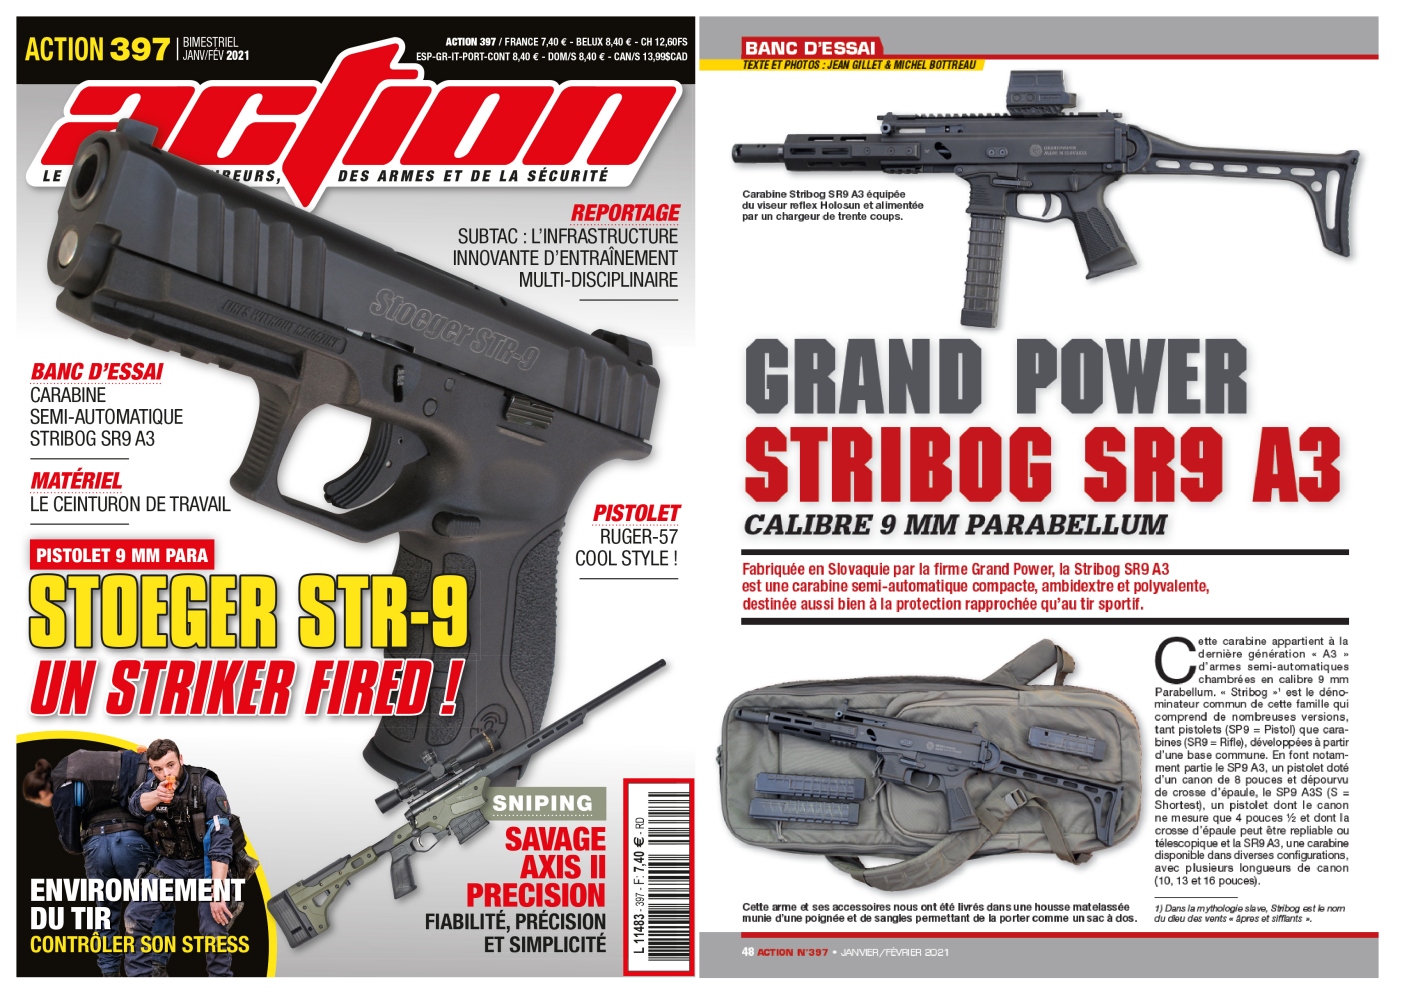 Le banc d'essai de la carabine Grand Power Stribog SR9 A3 a été publié sur 6 pages dans le magazine Action n°397 (janvier/février 2021)